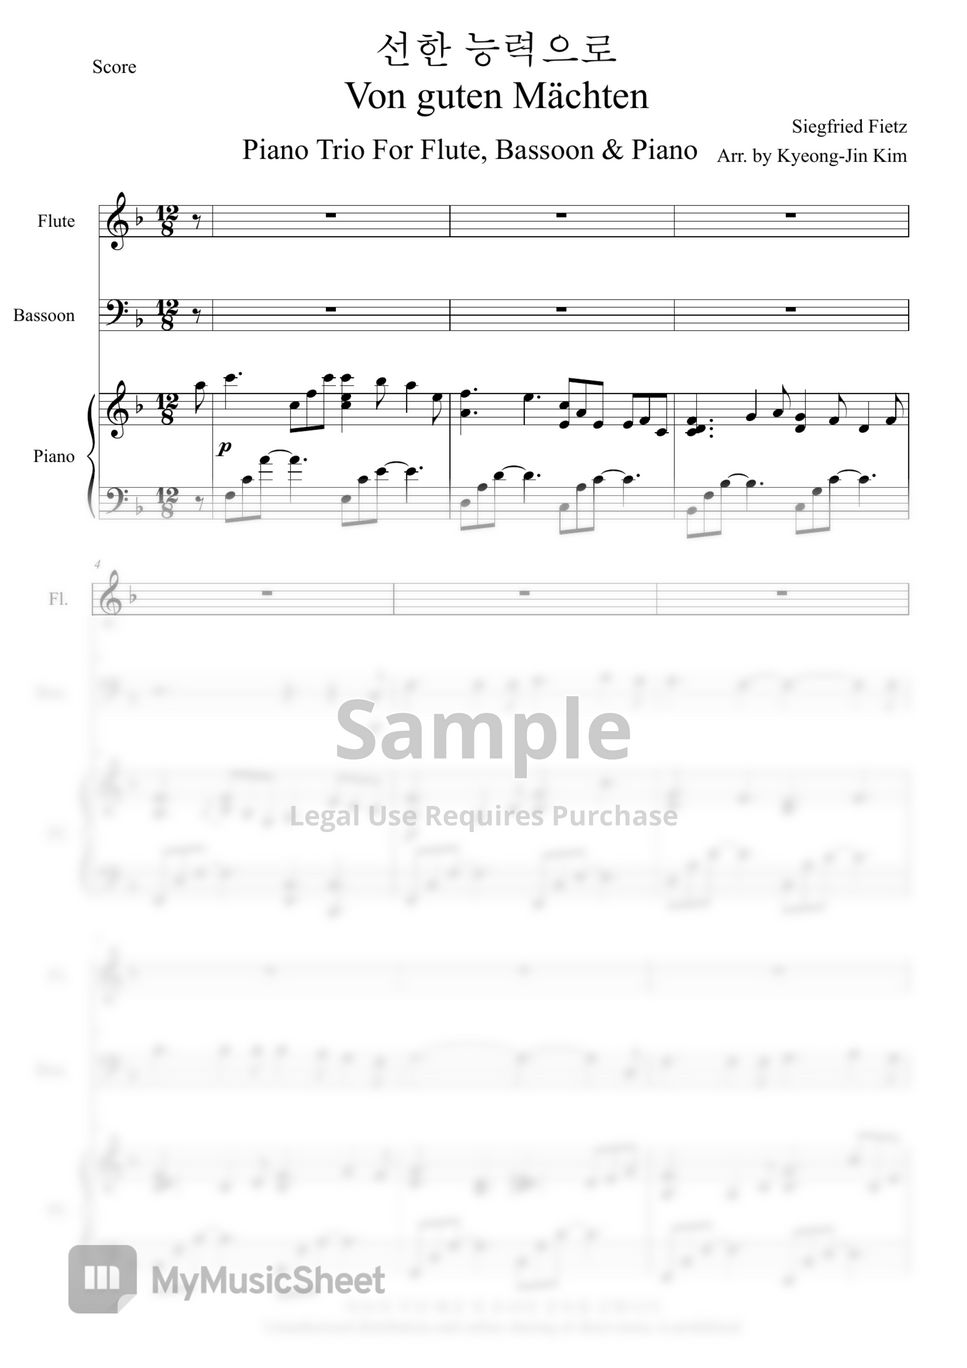 Siegfried Fietz - Von guten Mächten (Piano Trio) (Flute,Bassoon,Piano) by Pianist Jin